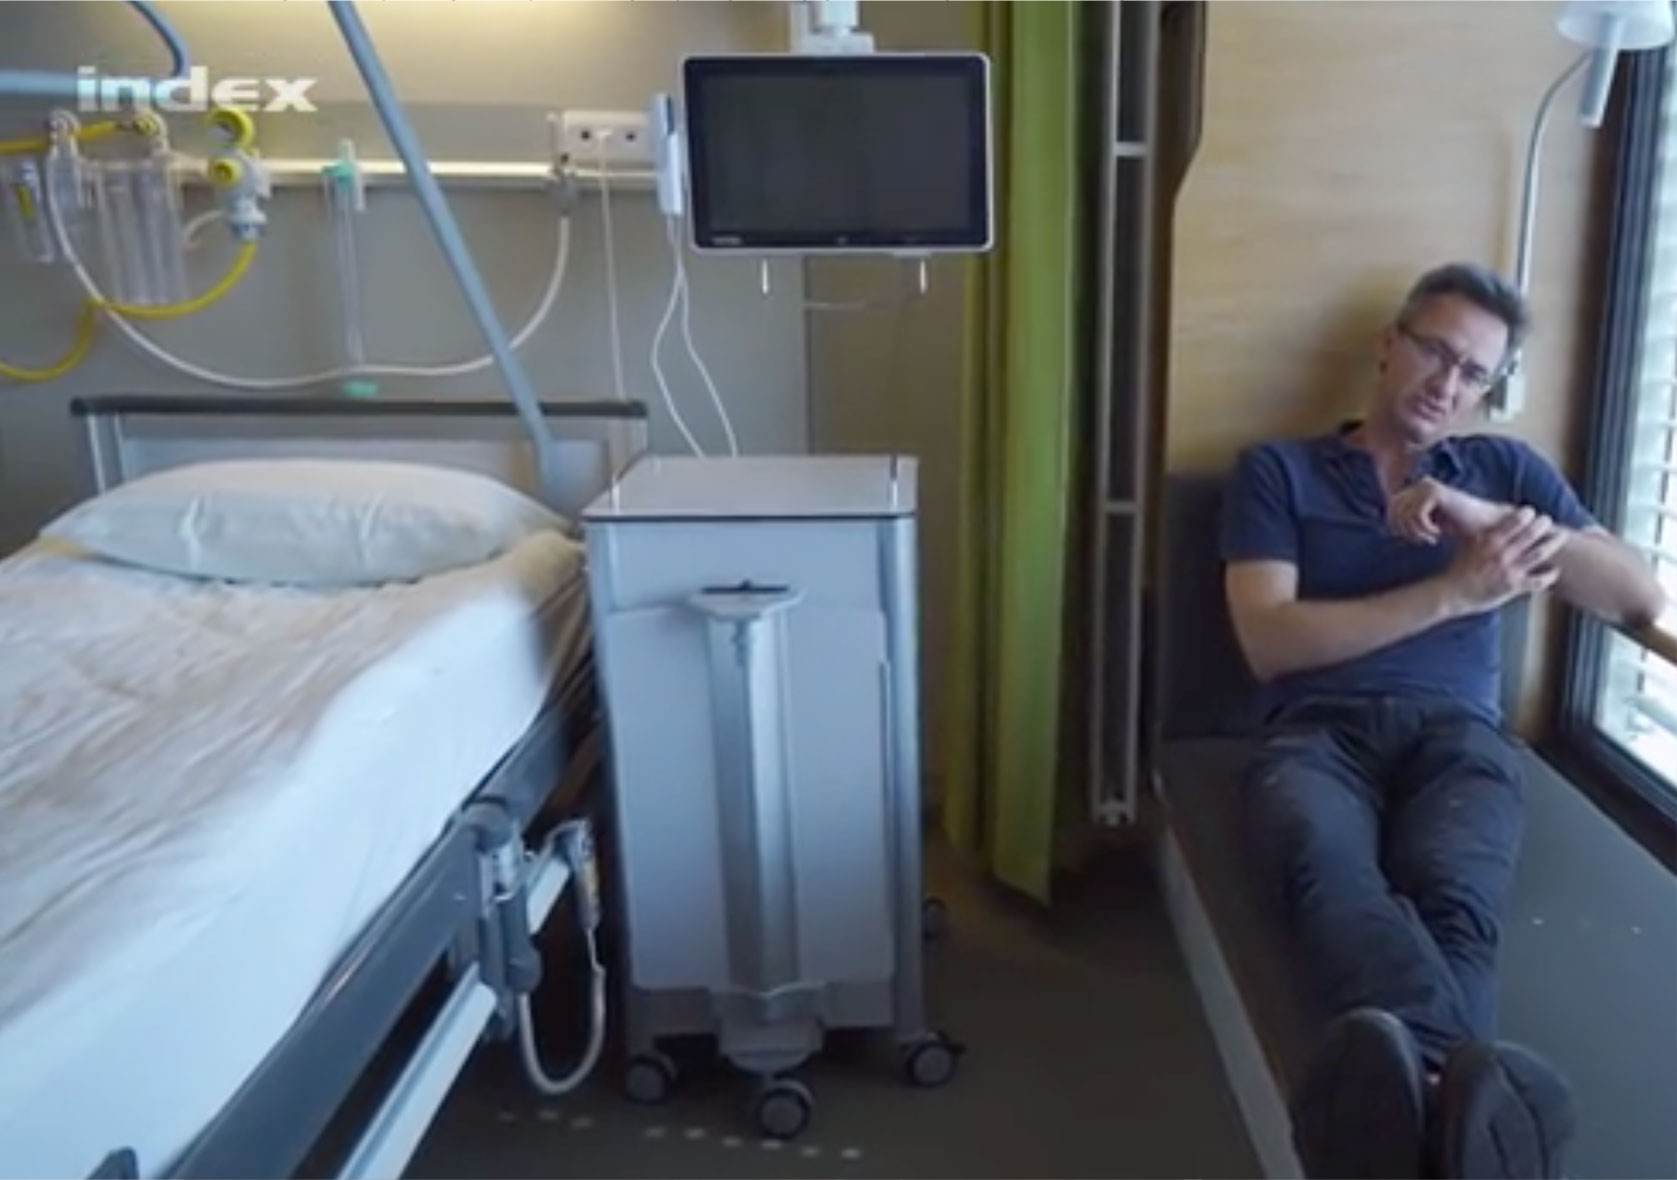 Az indexes Joób Sándor bemutat egy kétágyas bécsi kórházi szobát. A jobboldali ágy nem a második ágy, hanem egy plusz heverő, ha a fekvőbeteg az ablakon szeretne bámészkodni, itt megteheti.